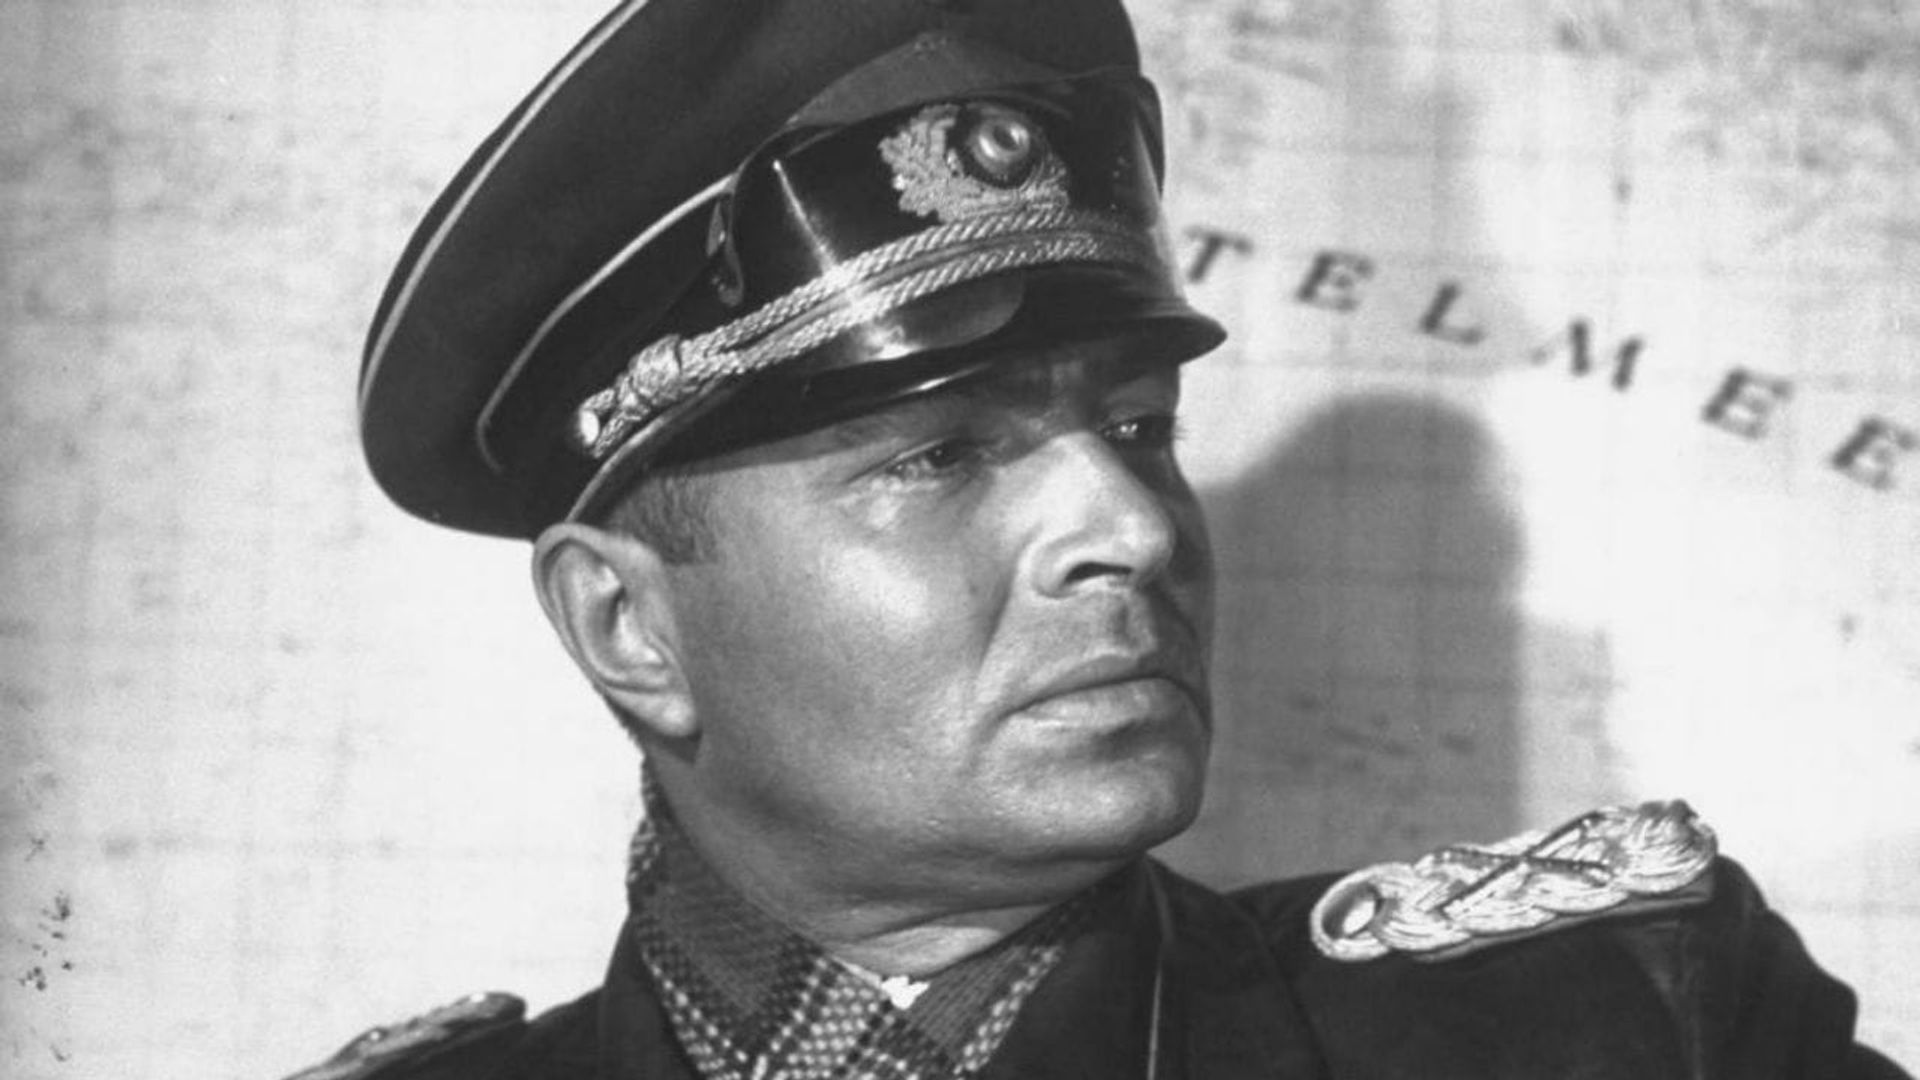 The Desert Fox: The Story of Rommel background